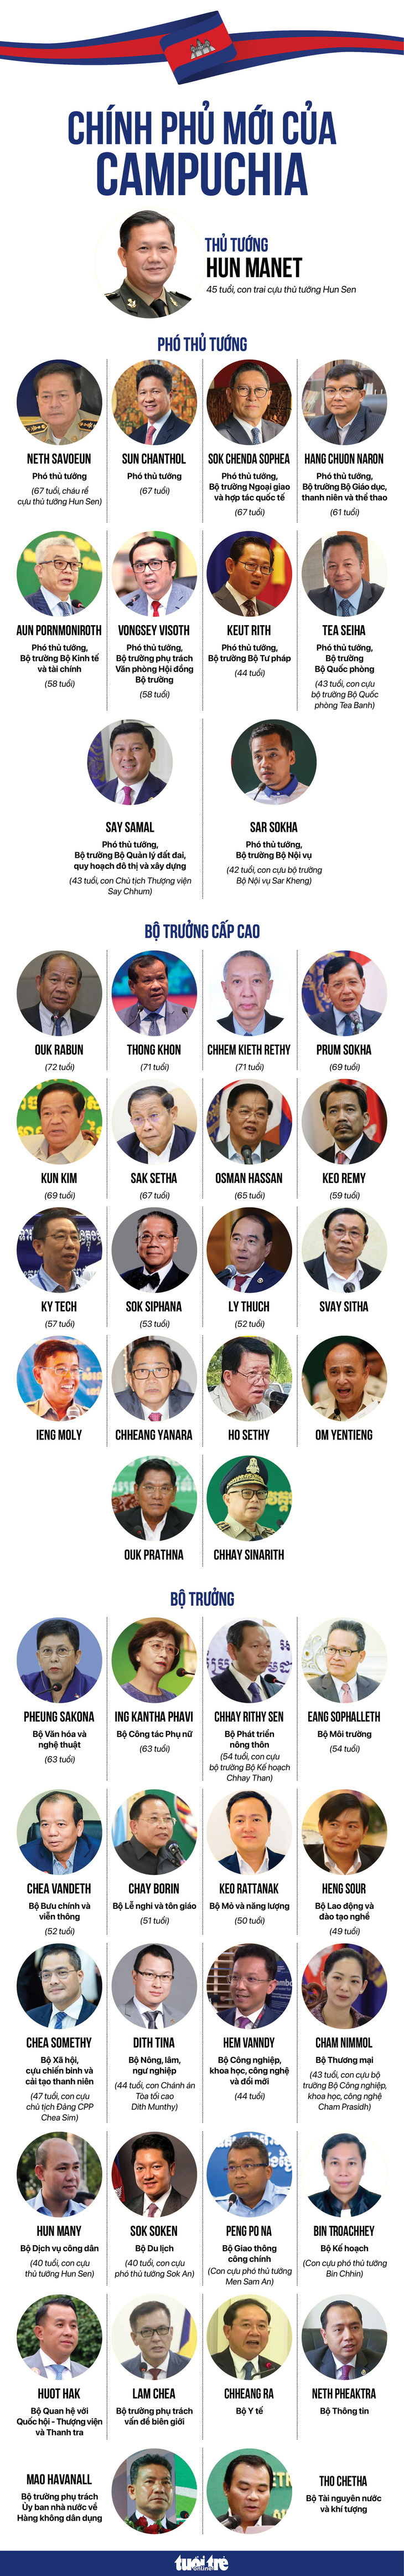 Các thành viên Chính phủ mới của Campuchia - Đồ họa: NGỌC ĐỨC - NGỌC THÀNH